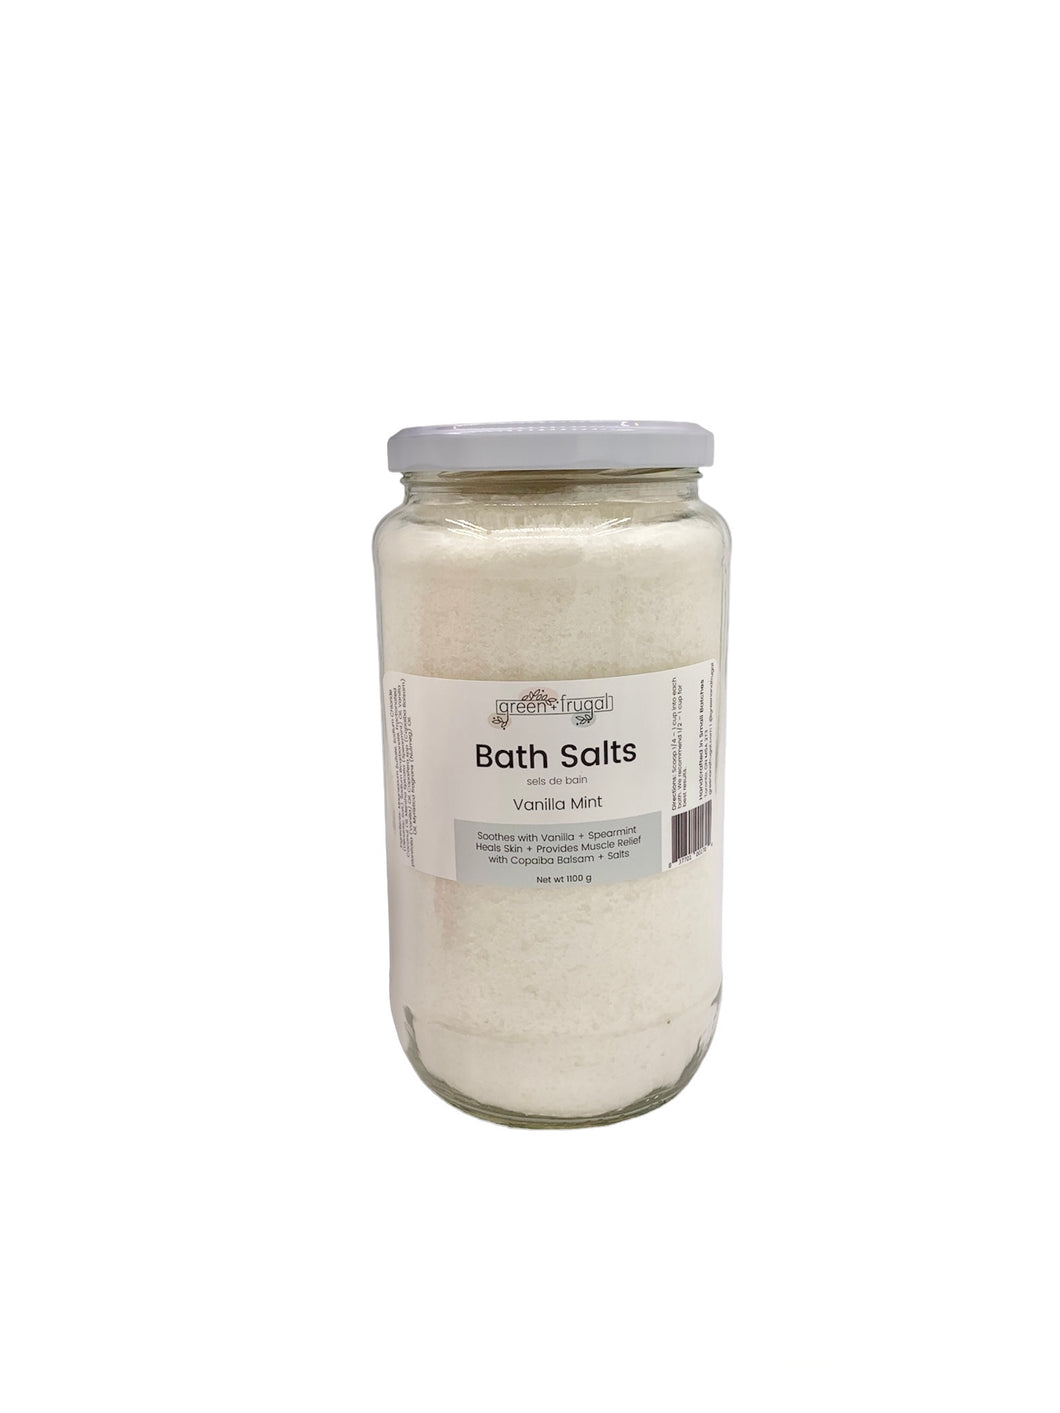 Bath Salts Vanilla Mint